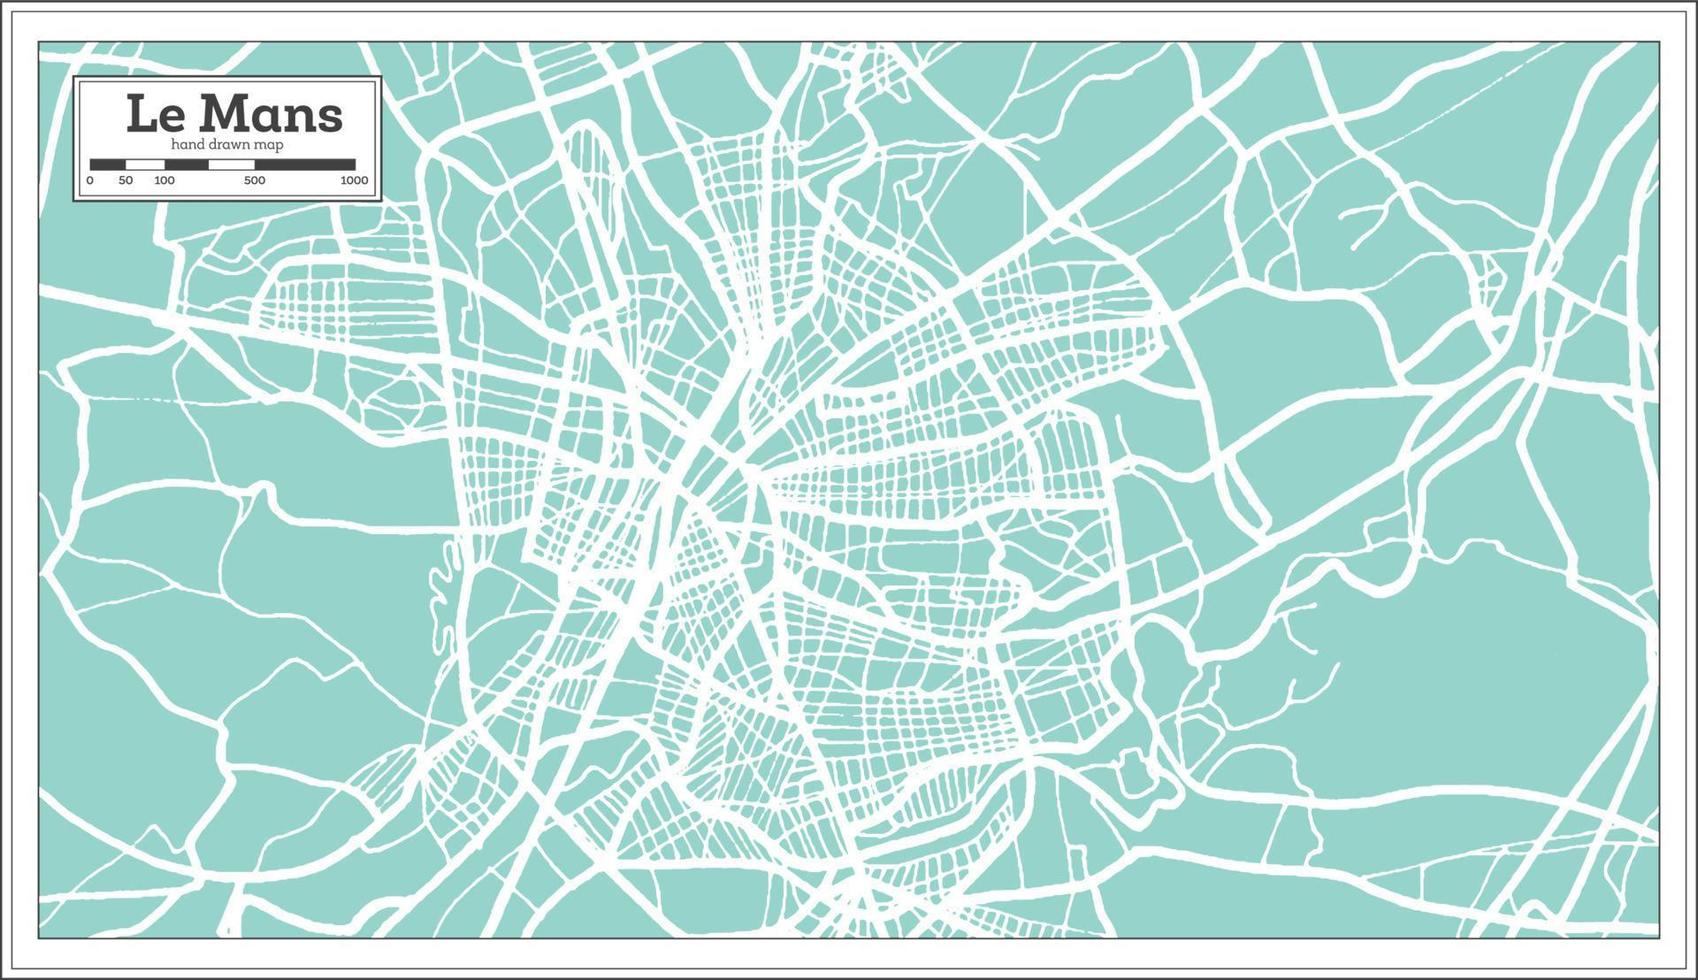 plan de la ville du mans france dans un style rétro. carte muette. illustration vectorielle. vecteur